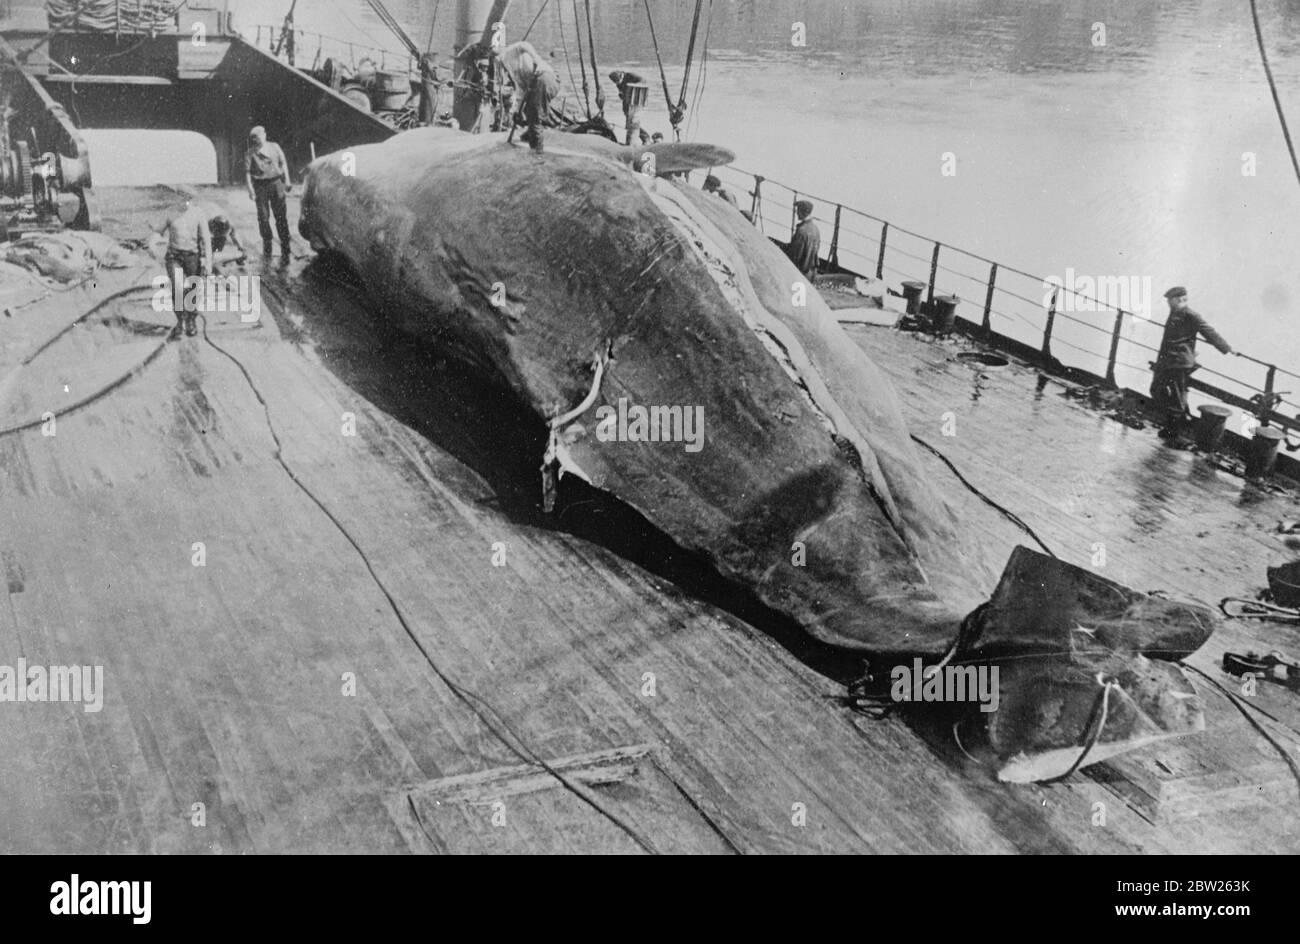 Labourer un « sillon » dans le pays de Galles. Des pouces de roussissement épais se découpent sous la puissante volonté de faire la lame d'un baleinier comme la carcasse puissante est coupée sur le navire soviétique de chasse à la baleine 'Aleuta' dans la mer de Behring, centre de l'industrie soviétique de chasse à la baleine. 9 février 1938 Banque D'Images